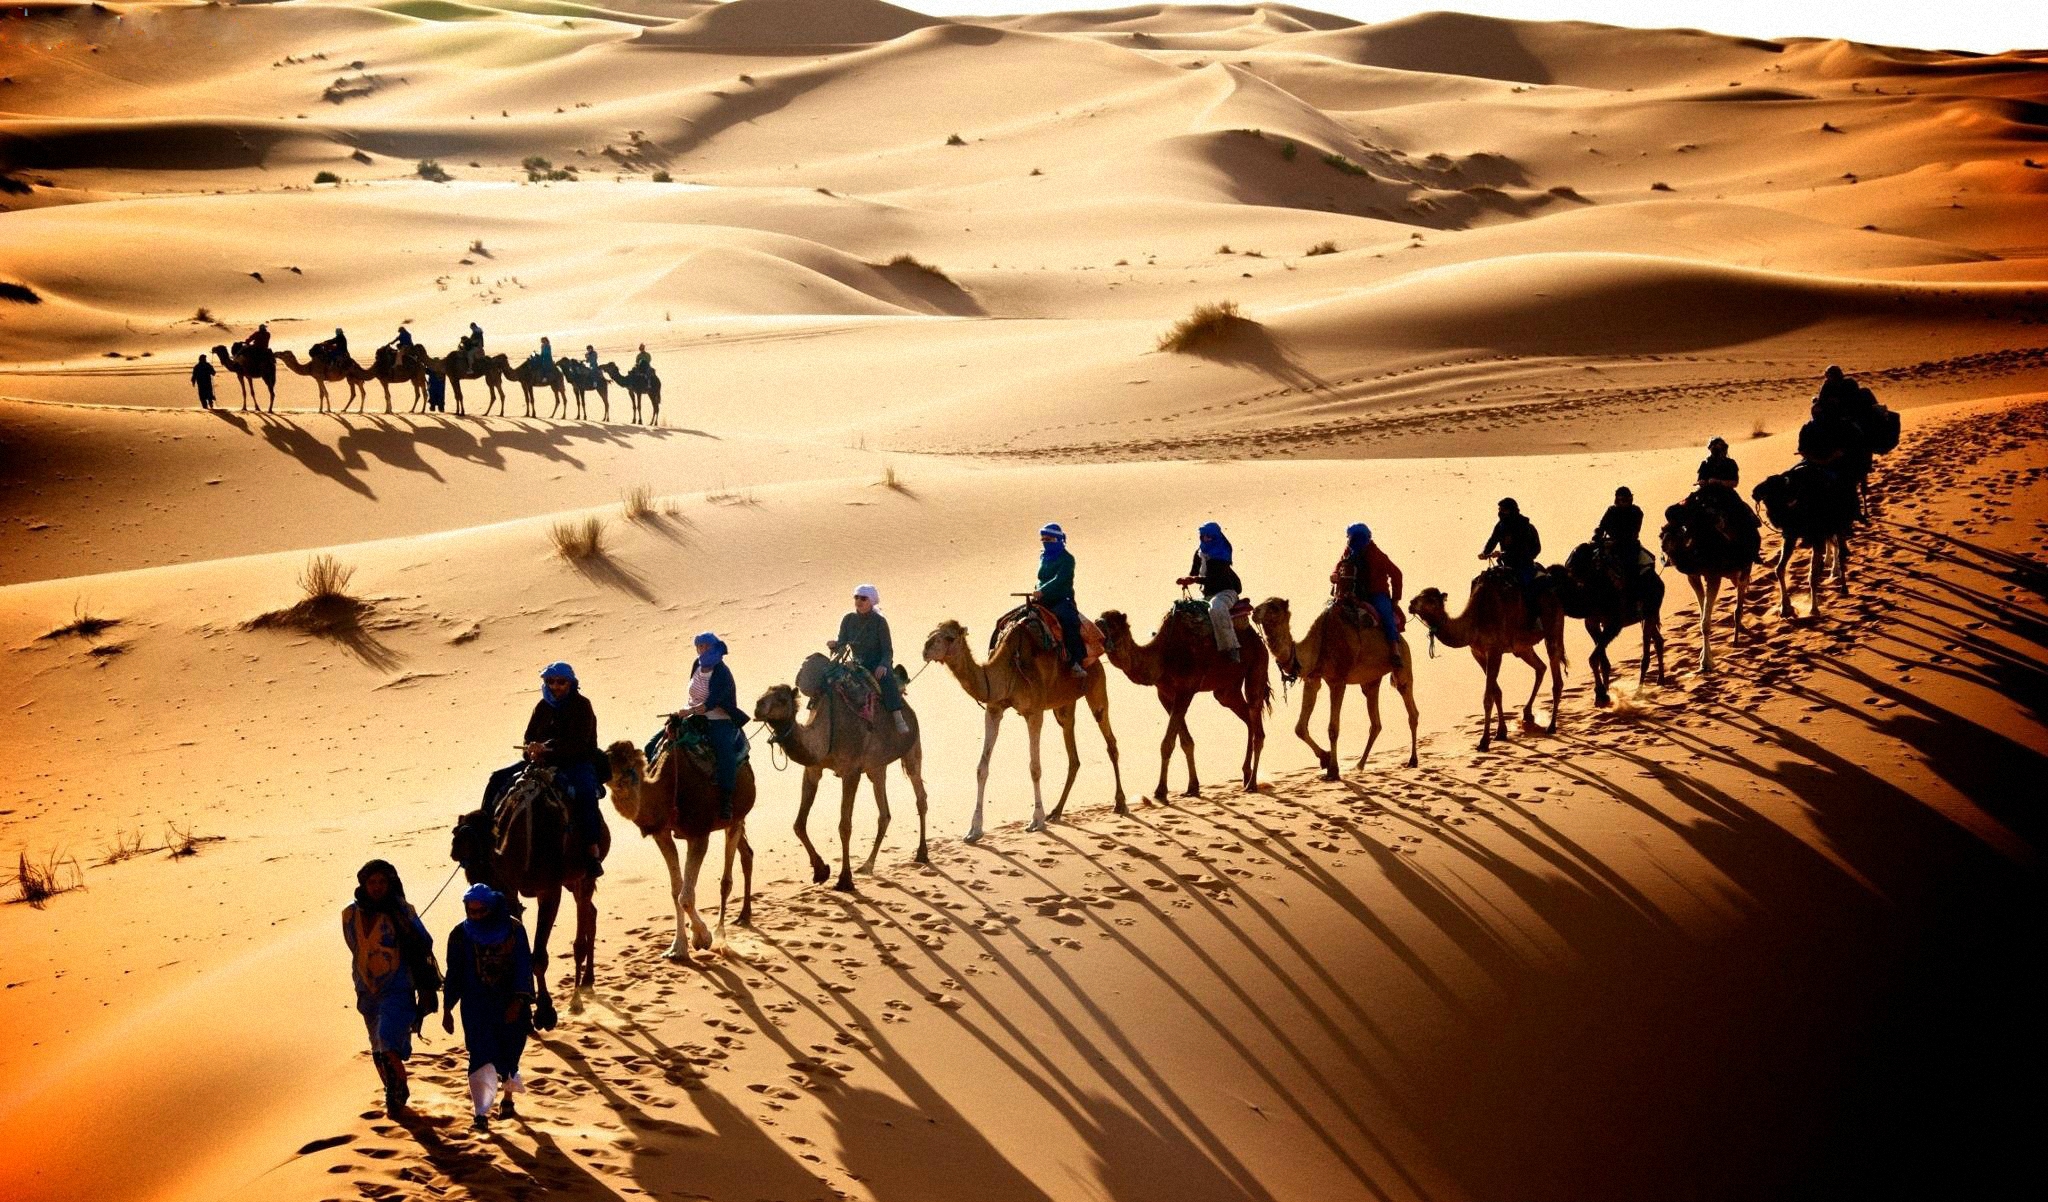 Караван азия. Верблюд Караван шелковый путь. Великий шелковый путь Караван. Караван верблюдов в пустыне.